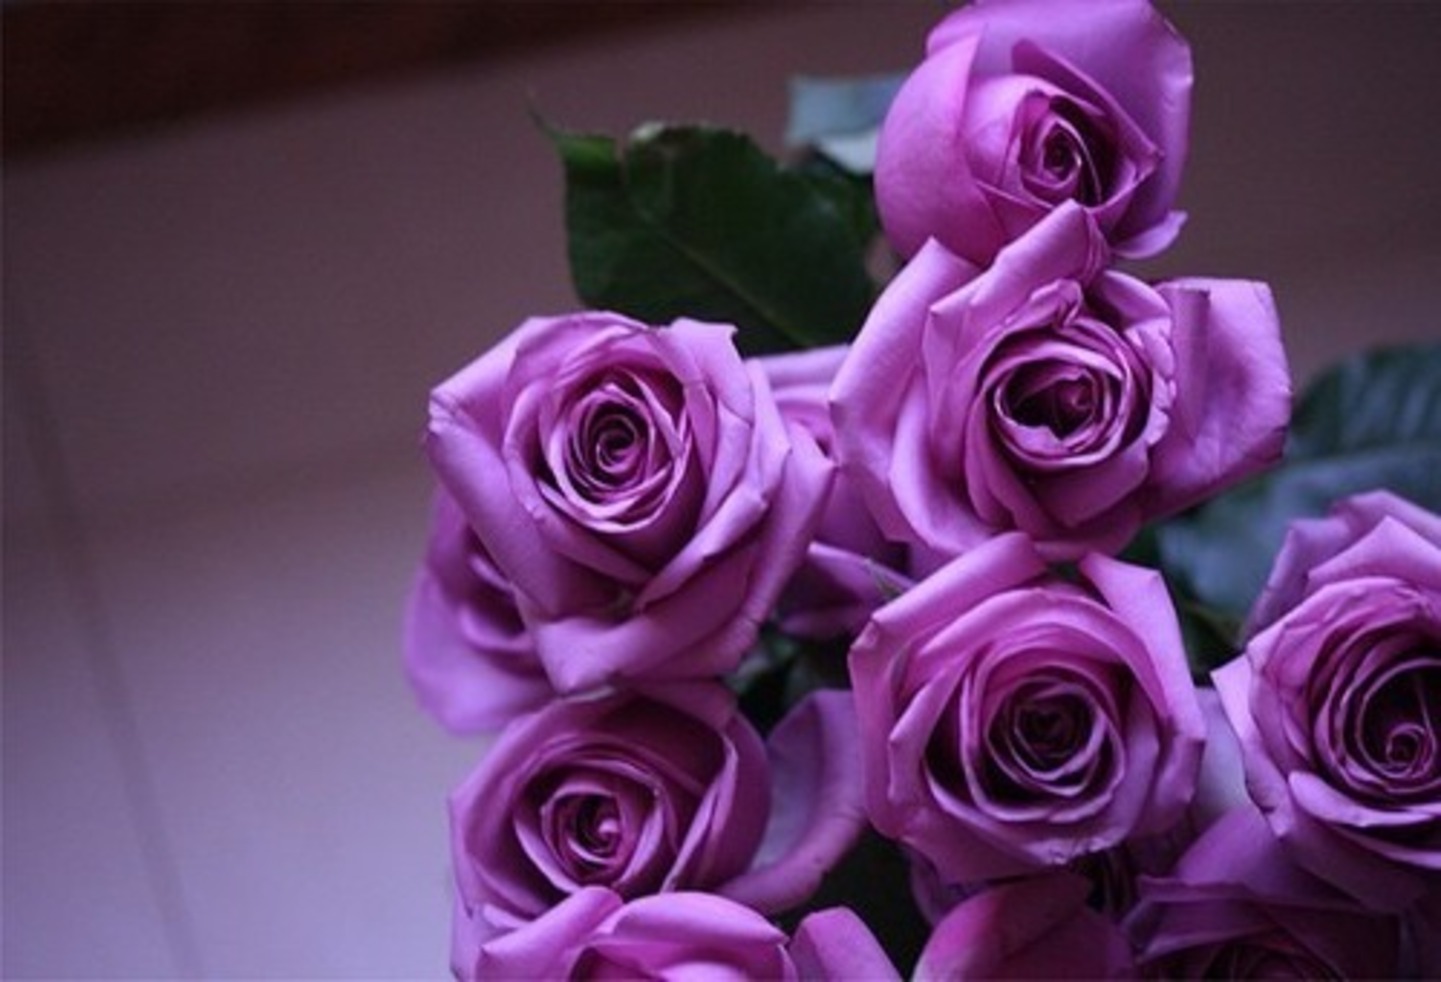 Beautiful Flowers Roses Purple Purple roses beautiful